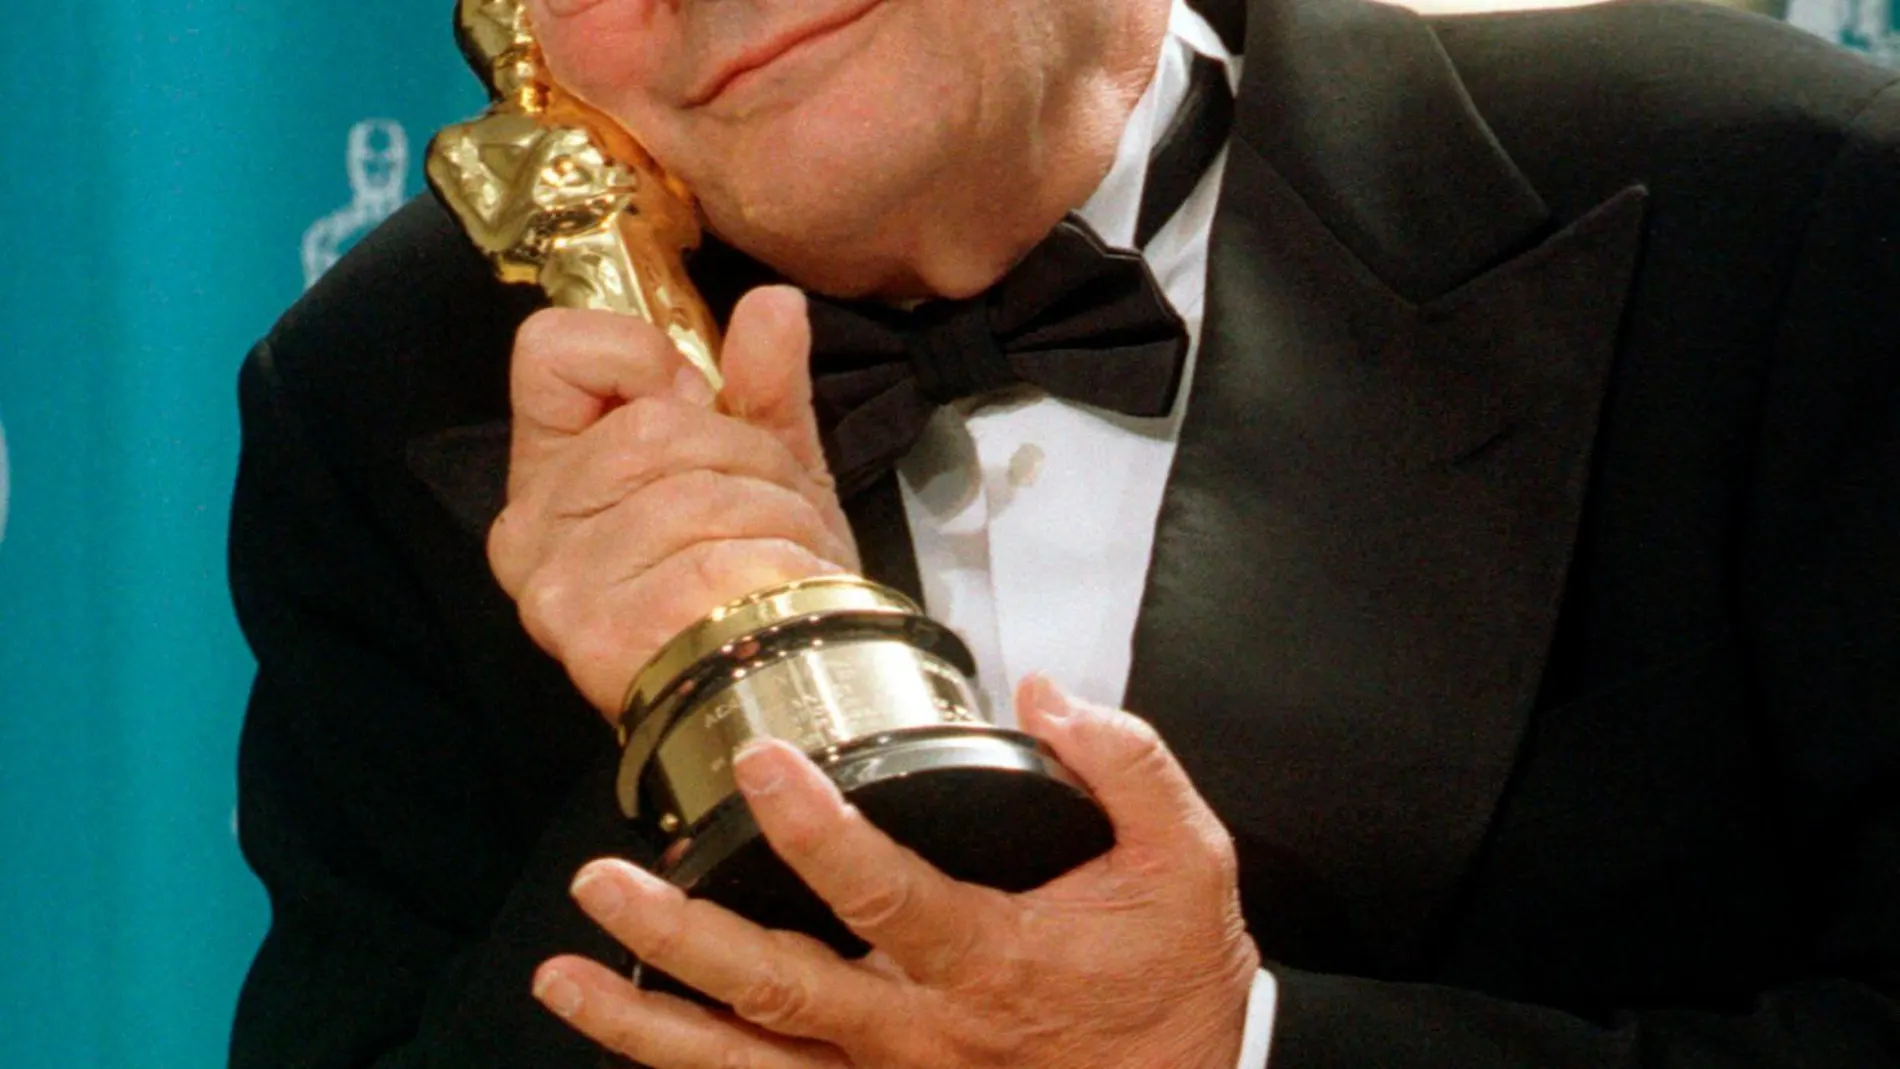 El cineasta recibió el Oscar honorífico en reconocimiento a toda su carrera en 1997 / Foto: Efe